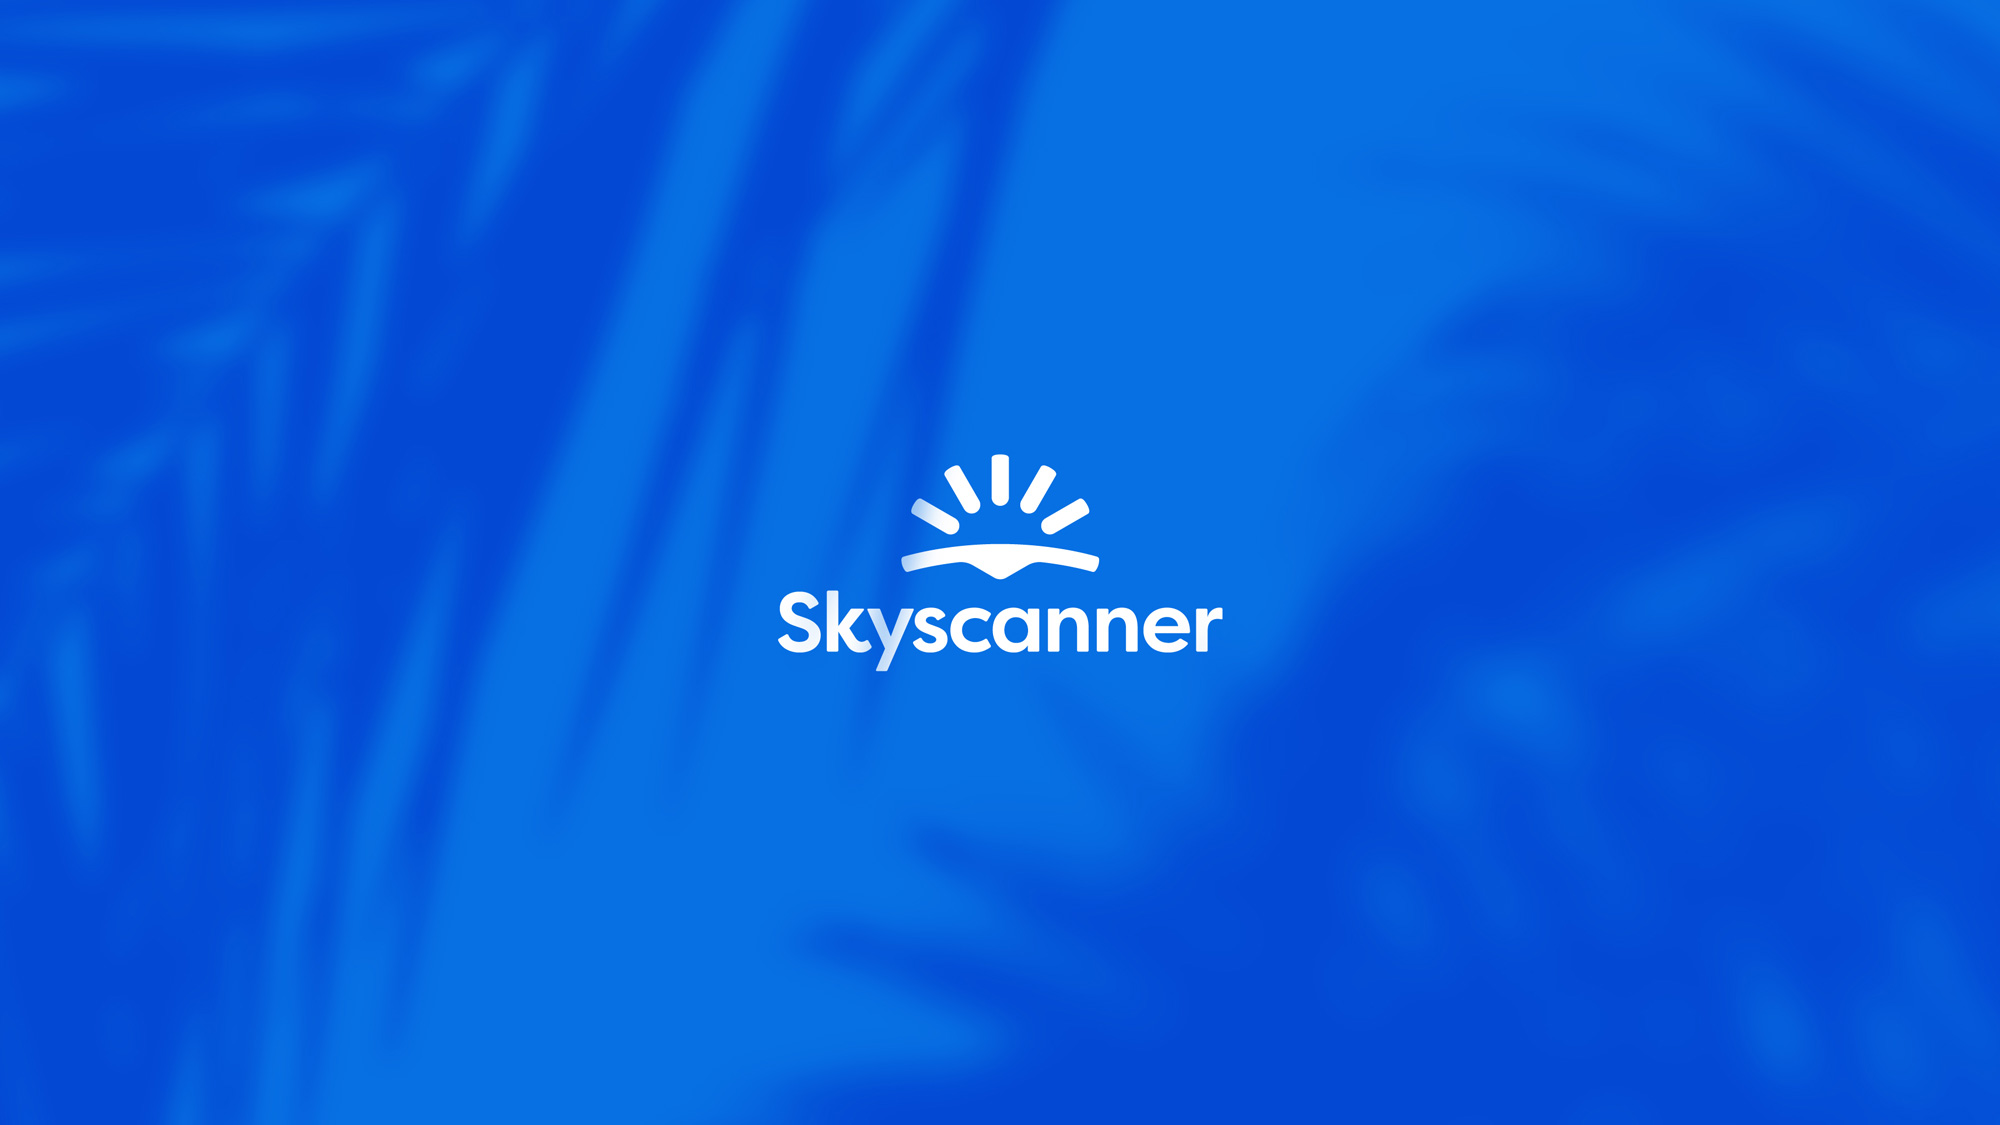 携程旗下在线旅游预订服务平台Skyscanner公司logo设计